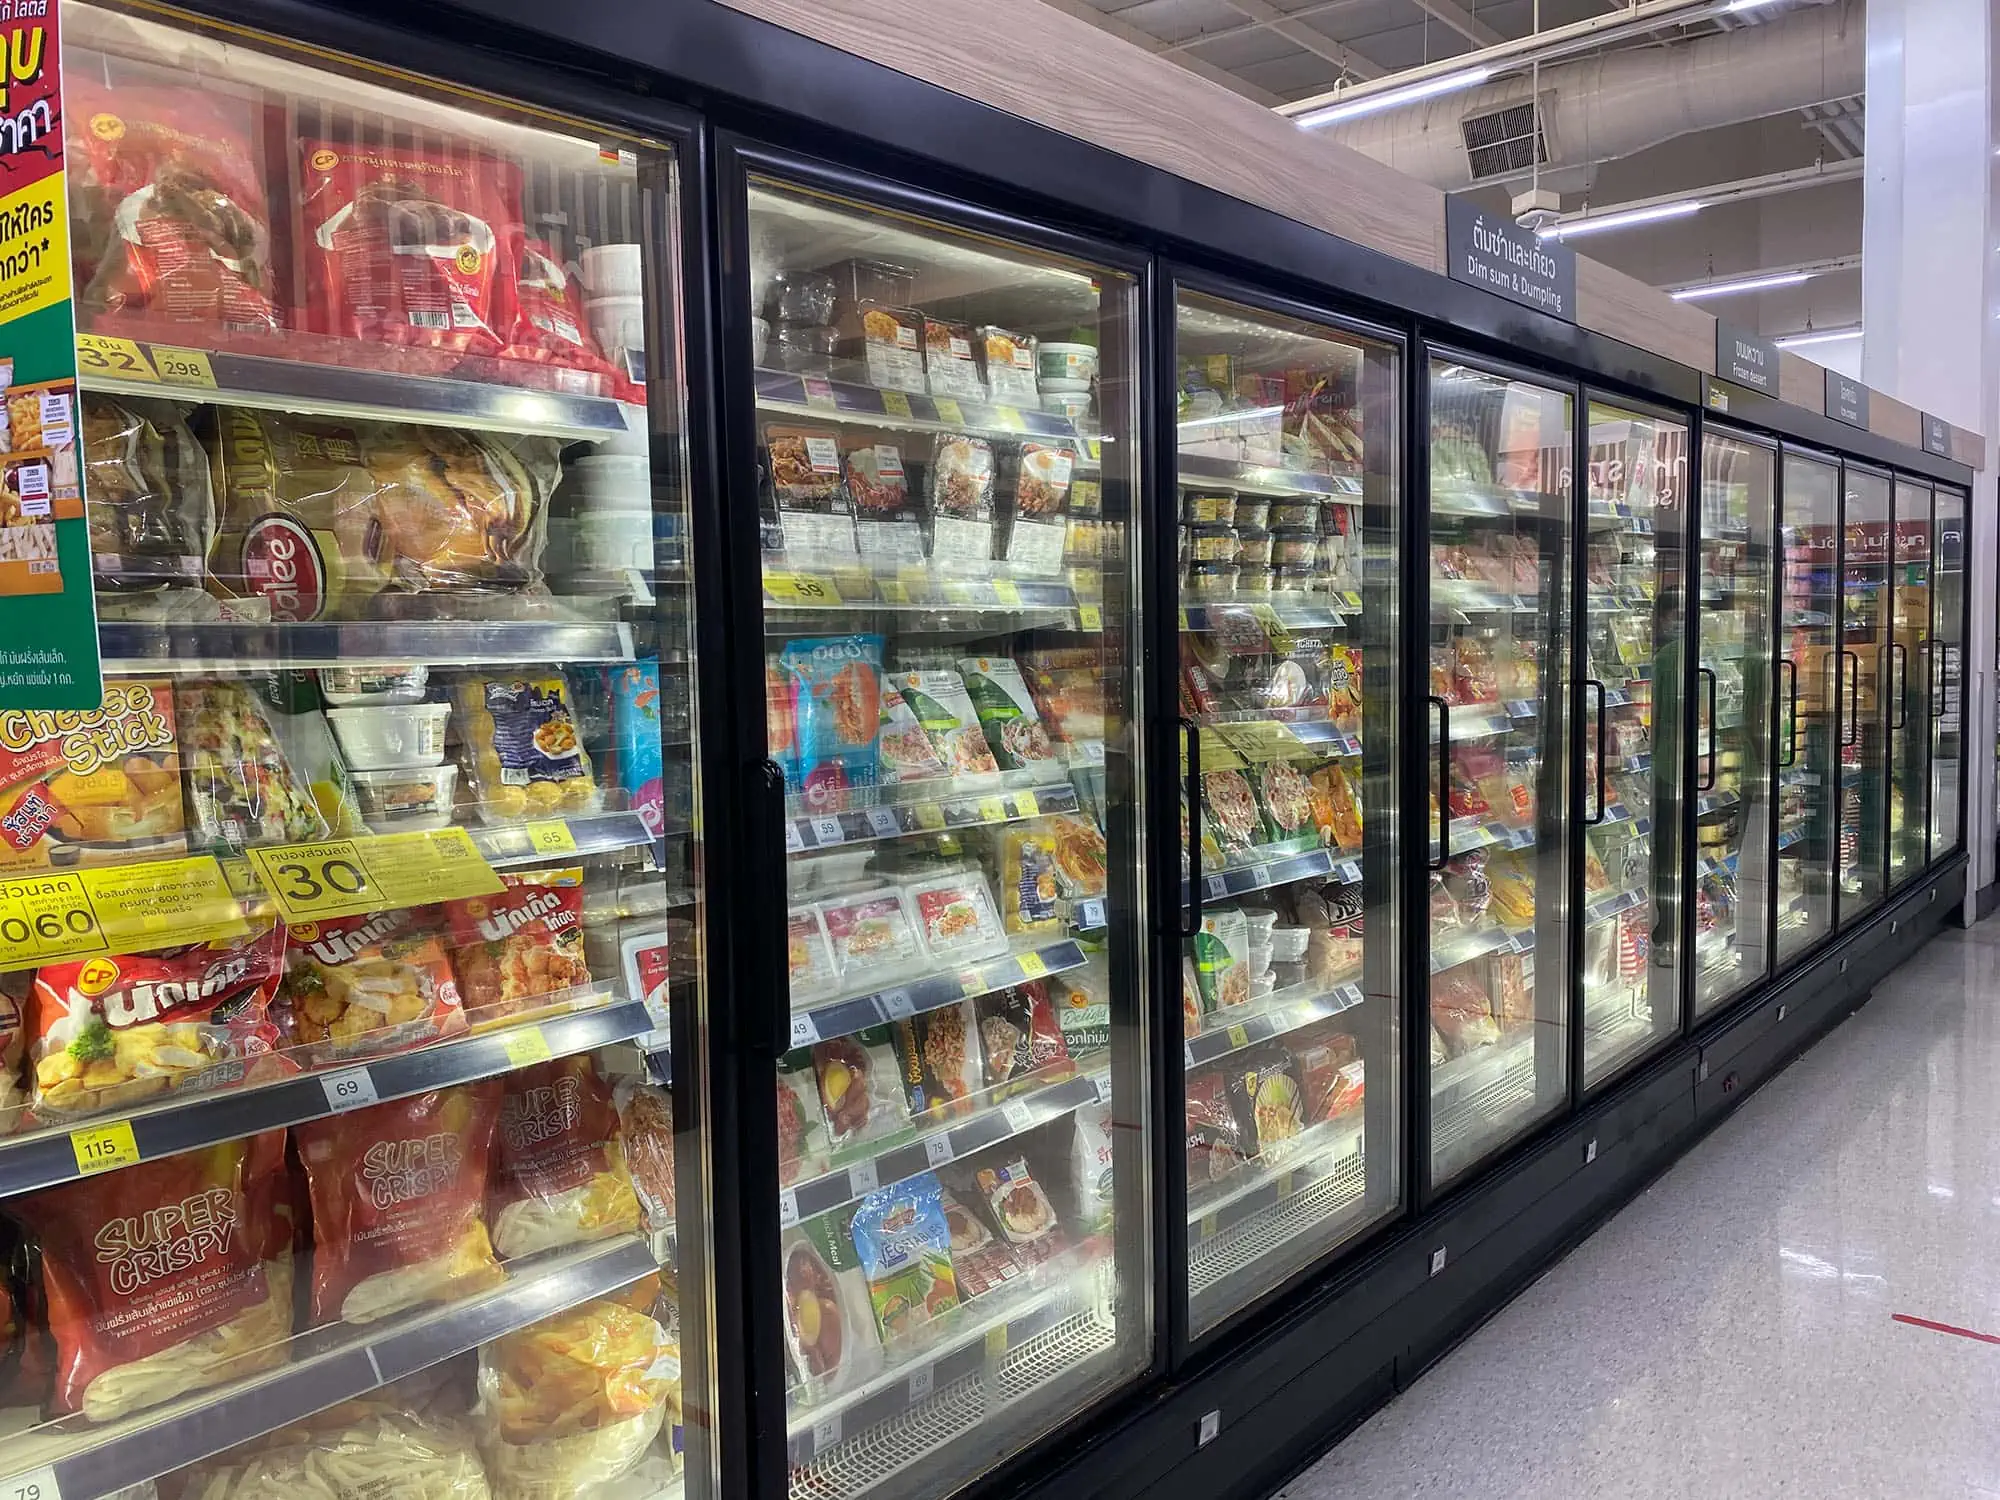 Row of glass door display fridges in a supermarket